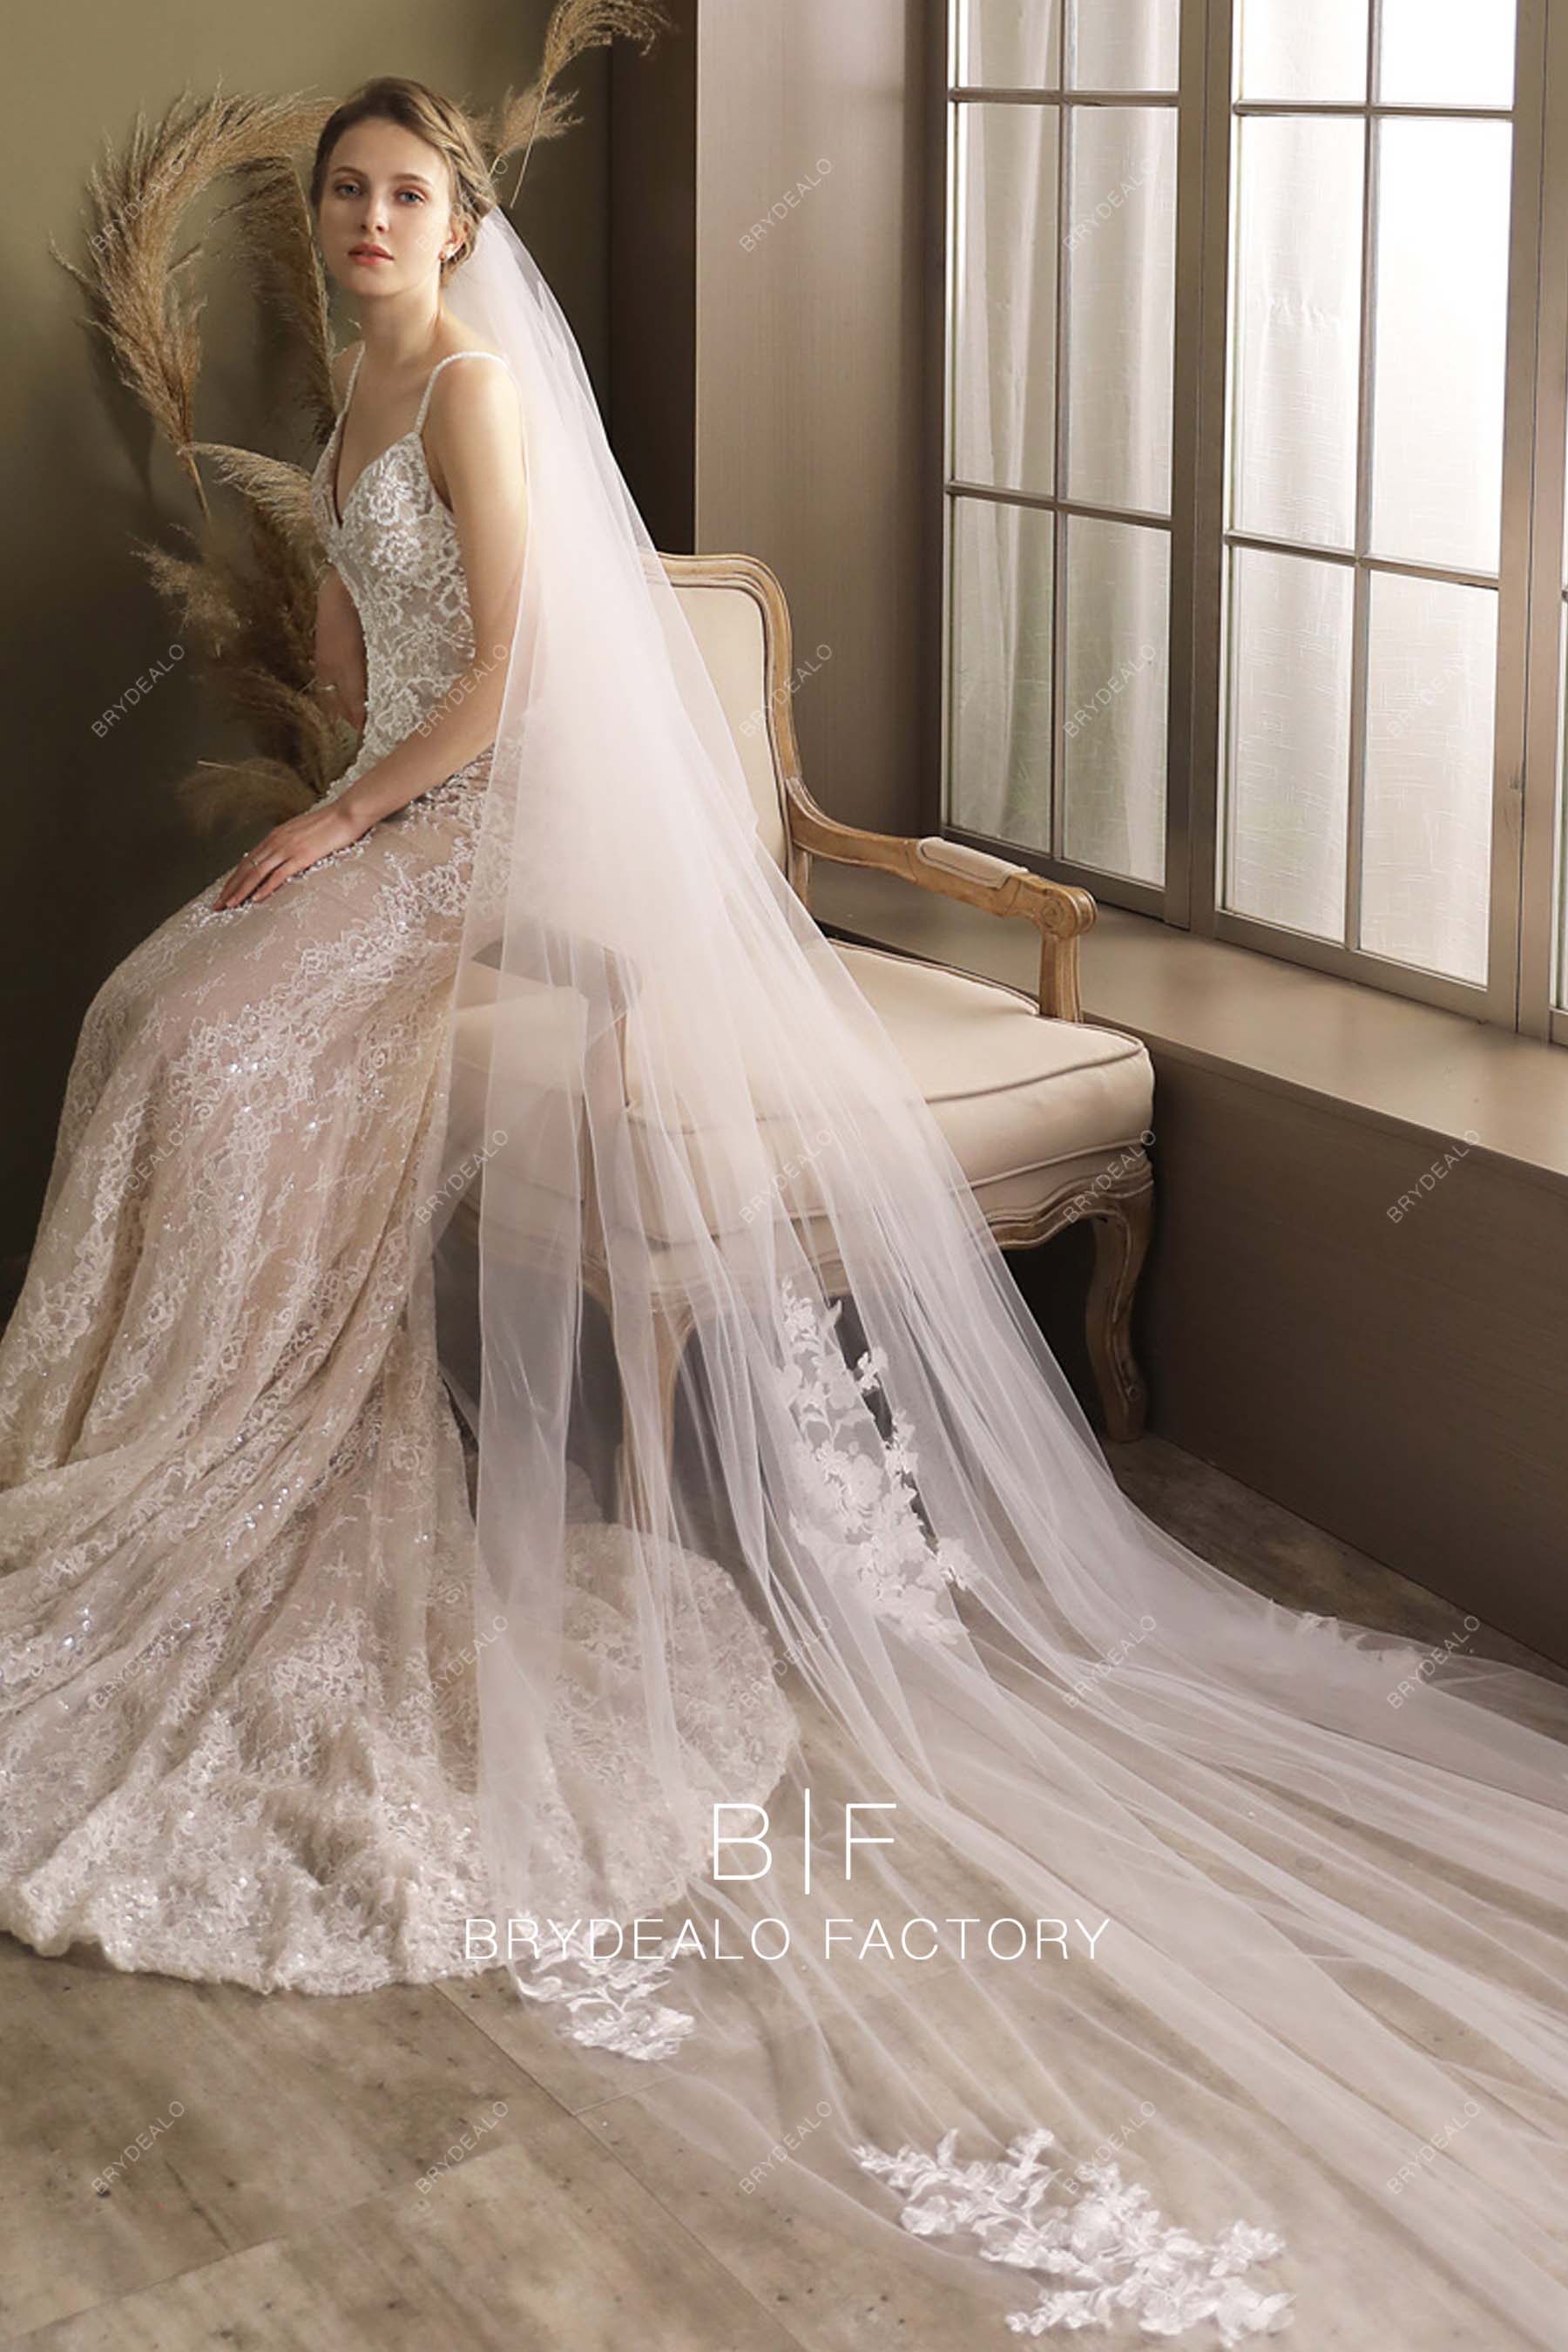 Exquisite Lace Long Wholesale Wedding Veil